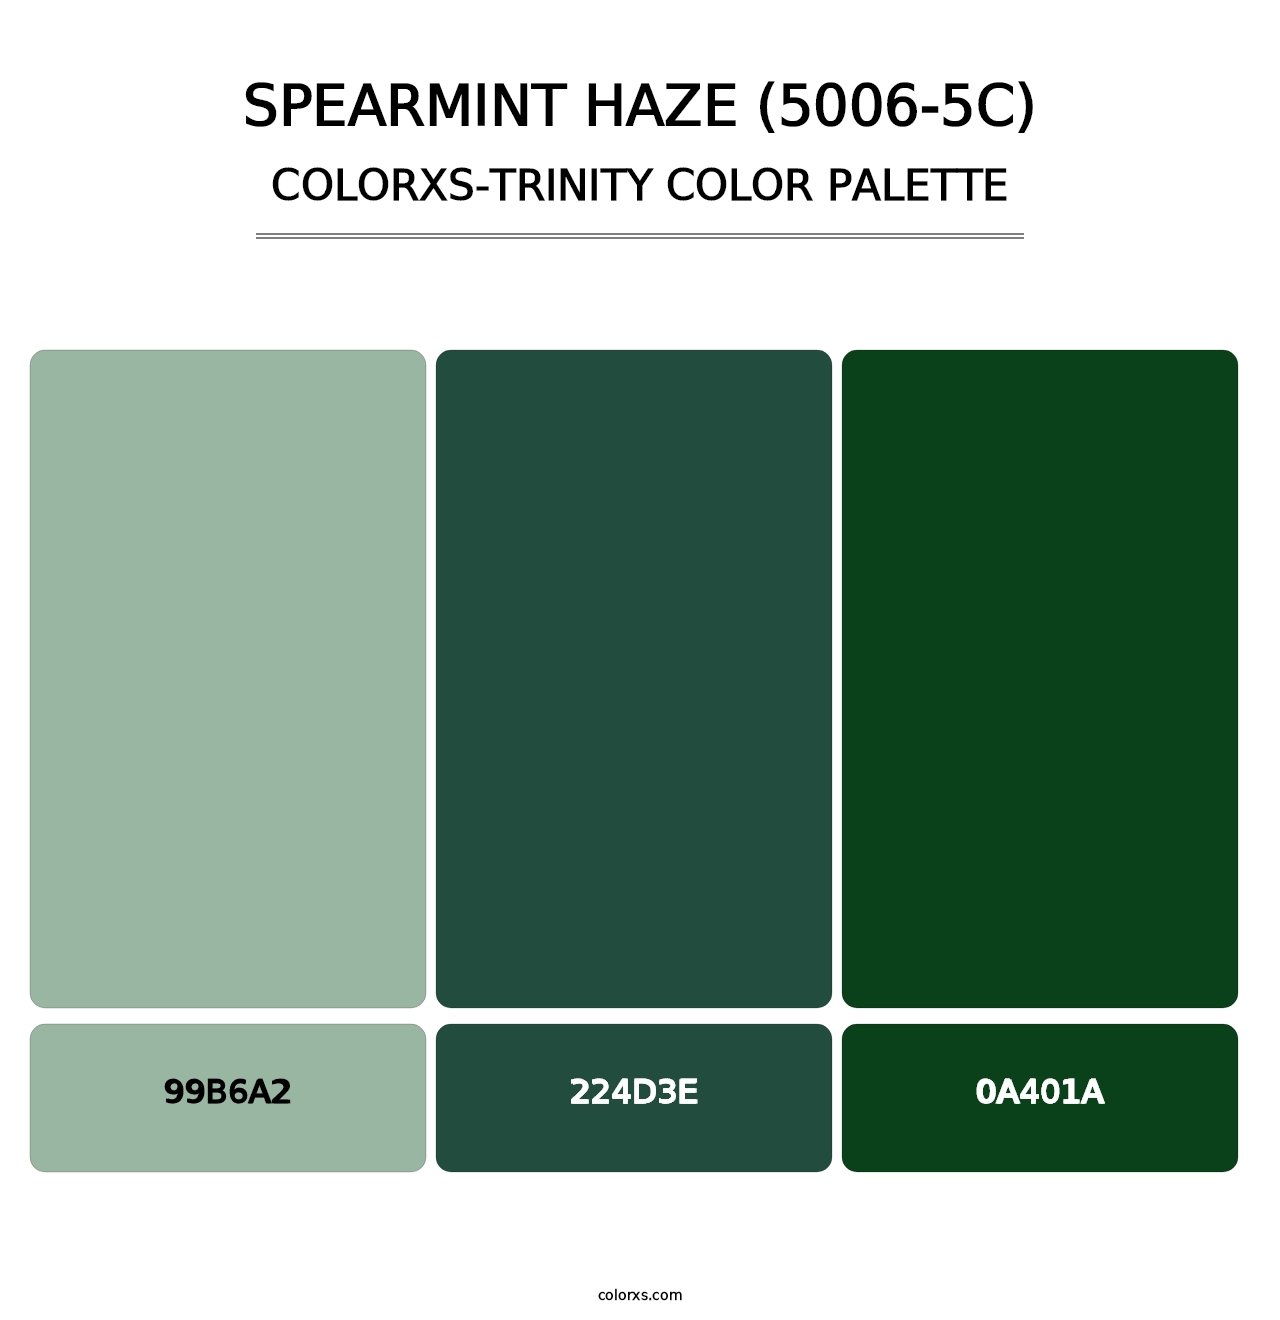 Spearmint Haze (5006-5C) - Colorxs Trinity Palette